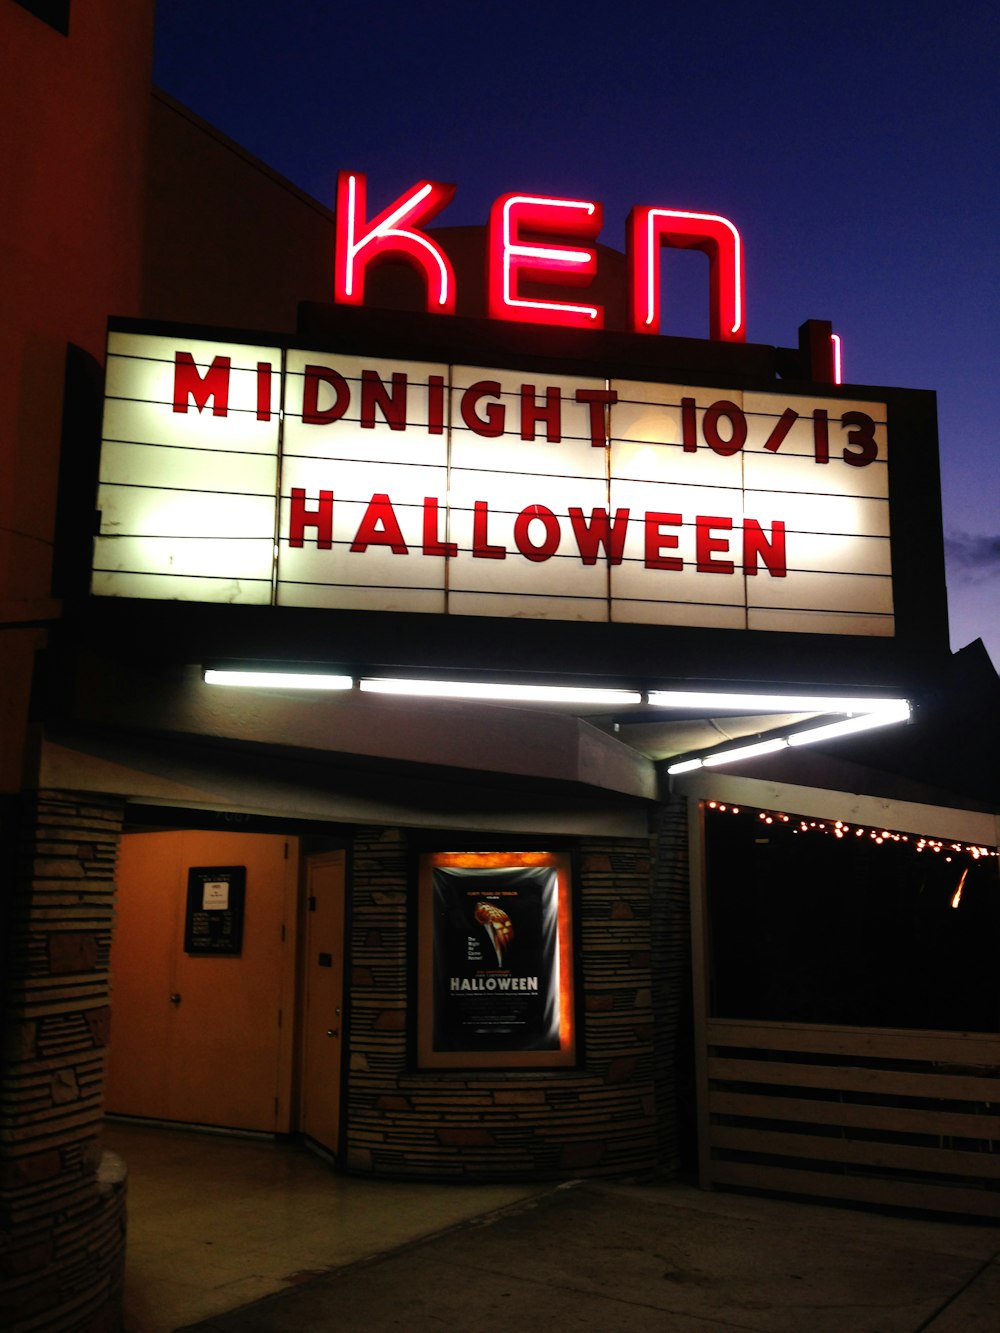 Una carpa de teatro con un letrero iluminado que dice medianoche 101 / 13 halloween